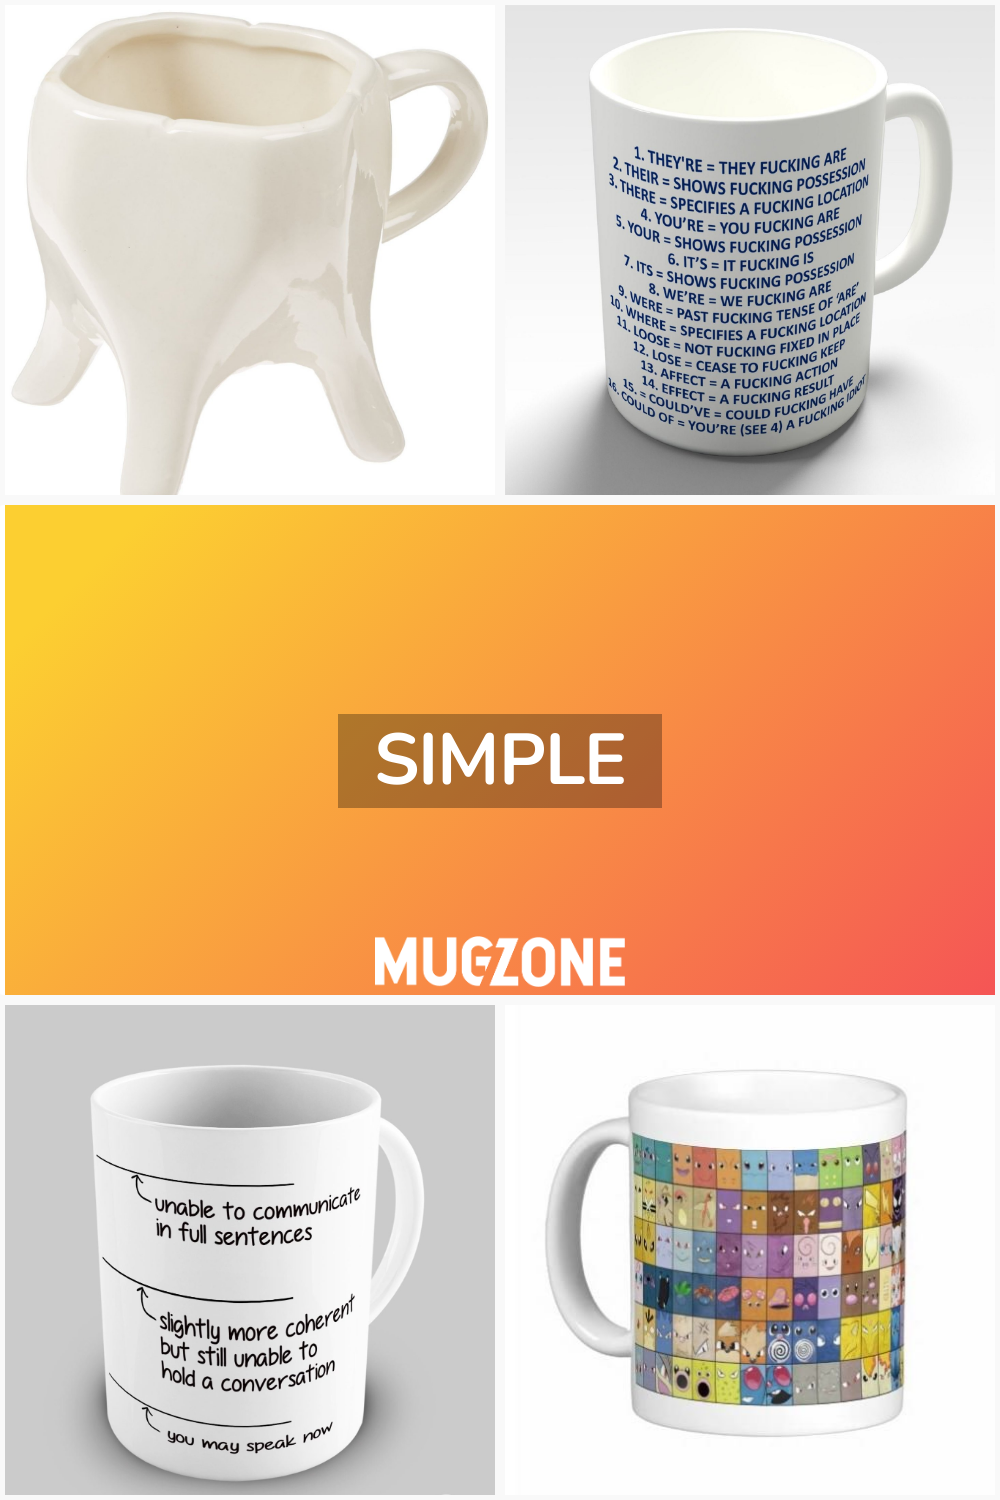 simple // Mug Zone